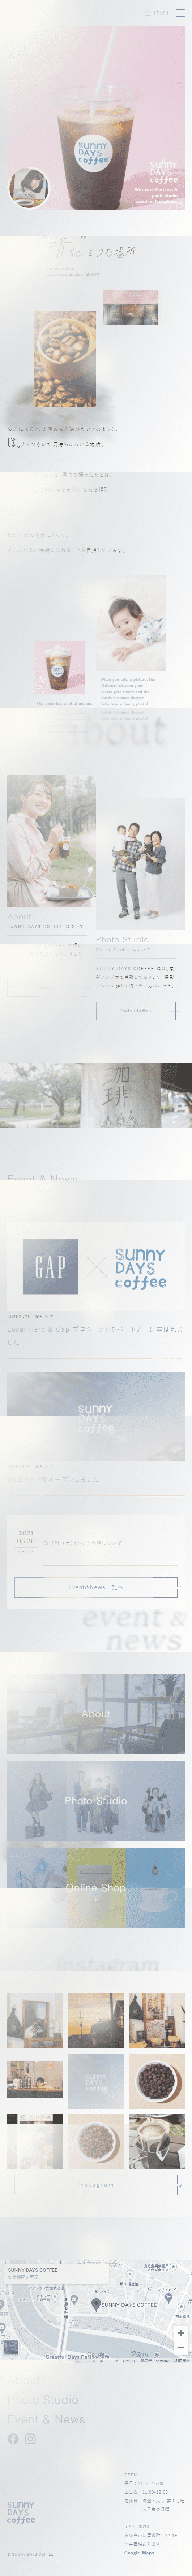 SUNNY DAYS COFFEE_sp_1